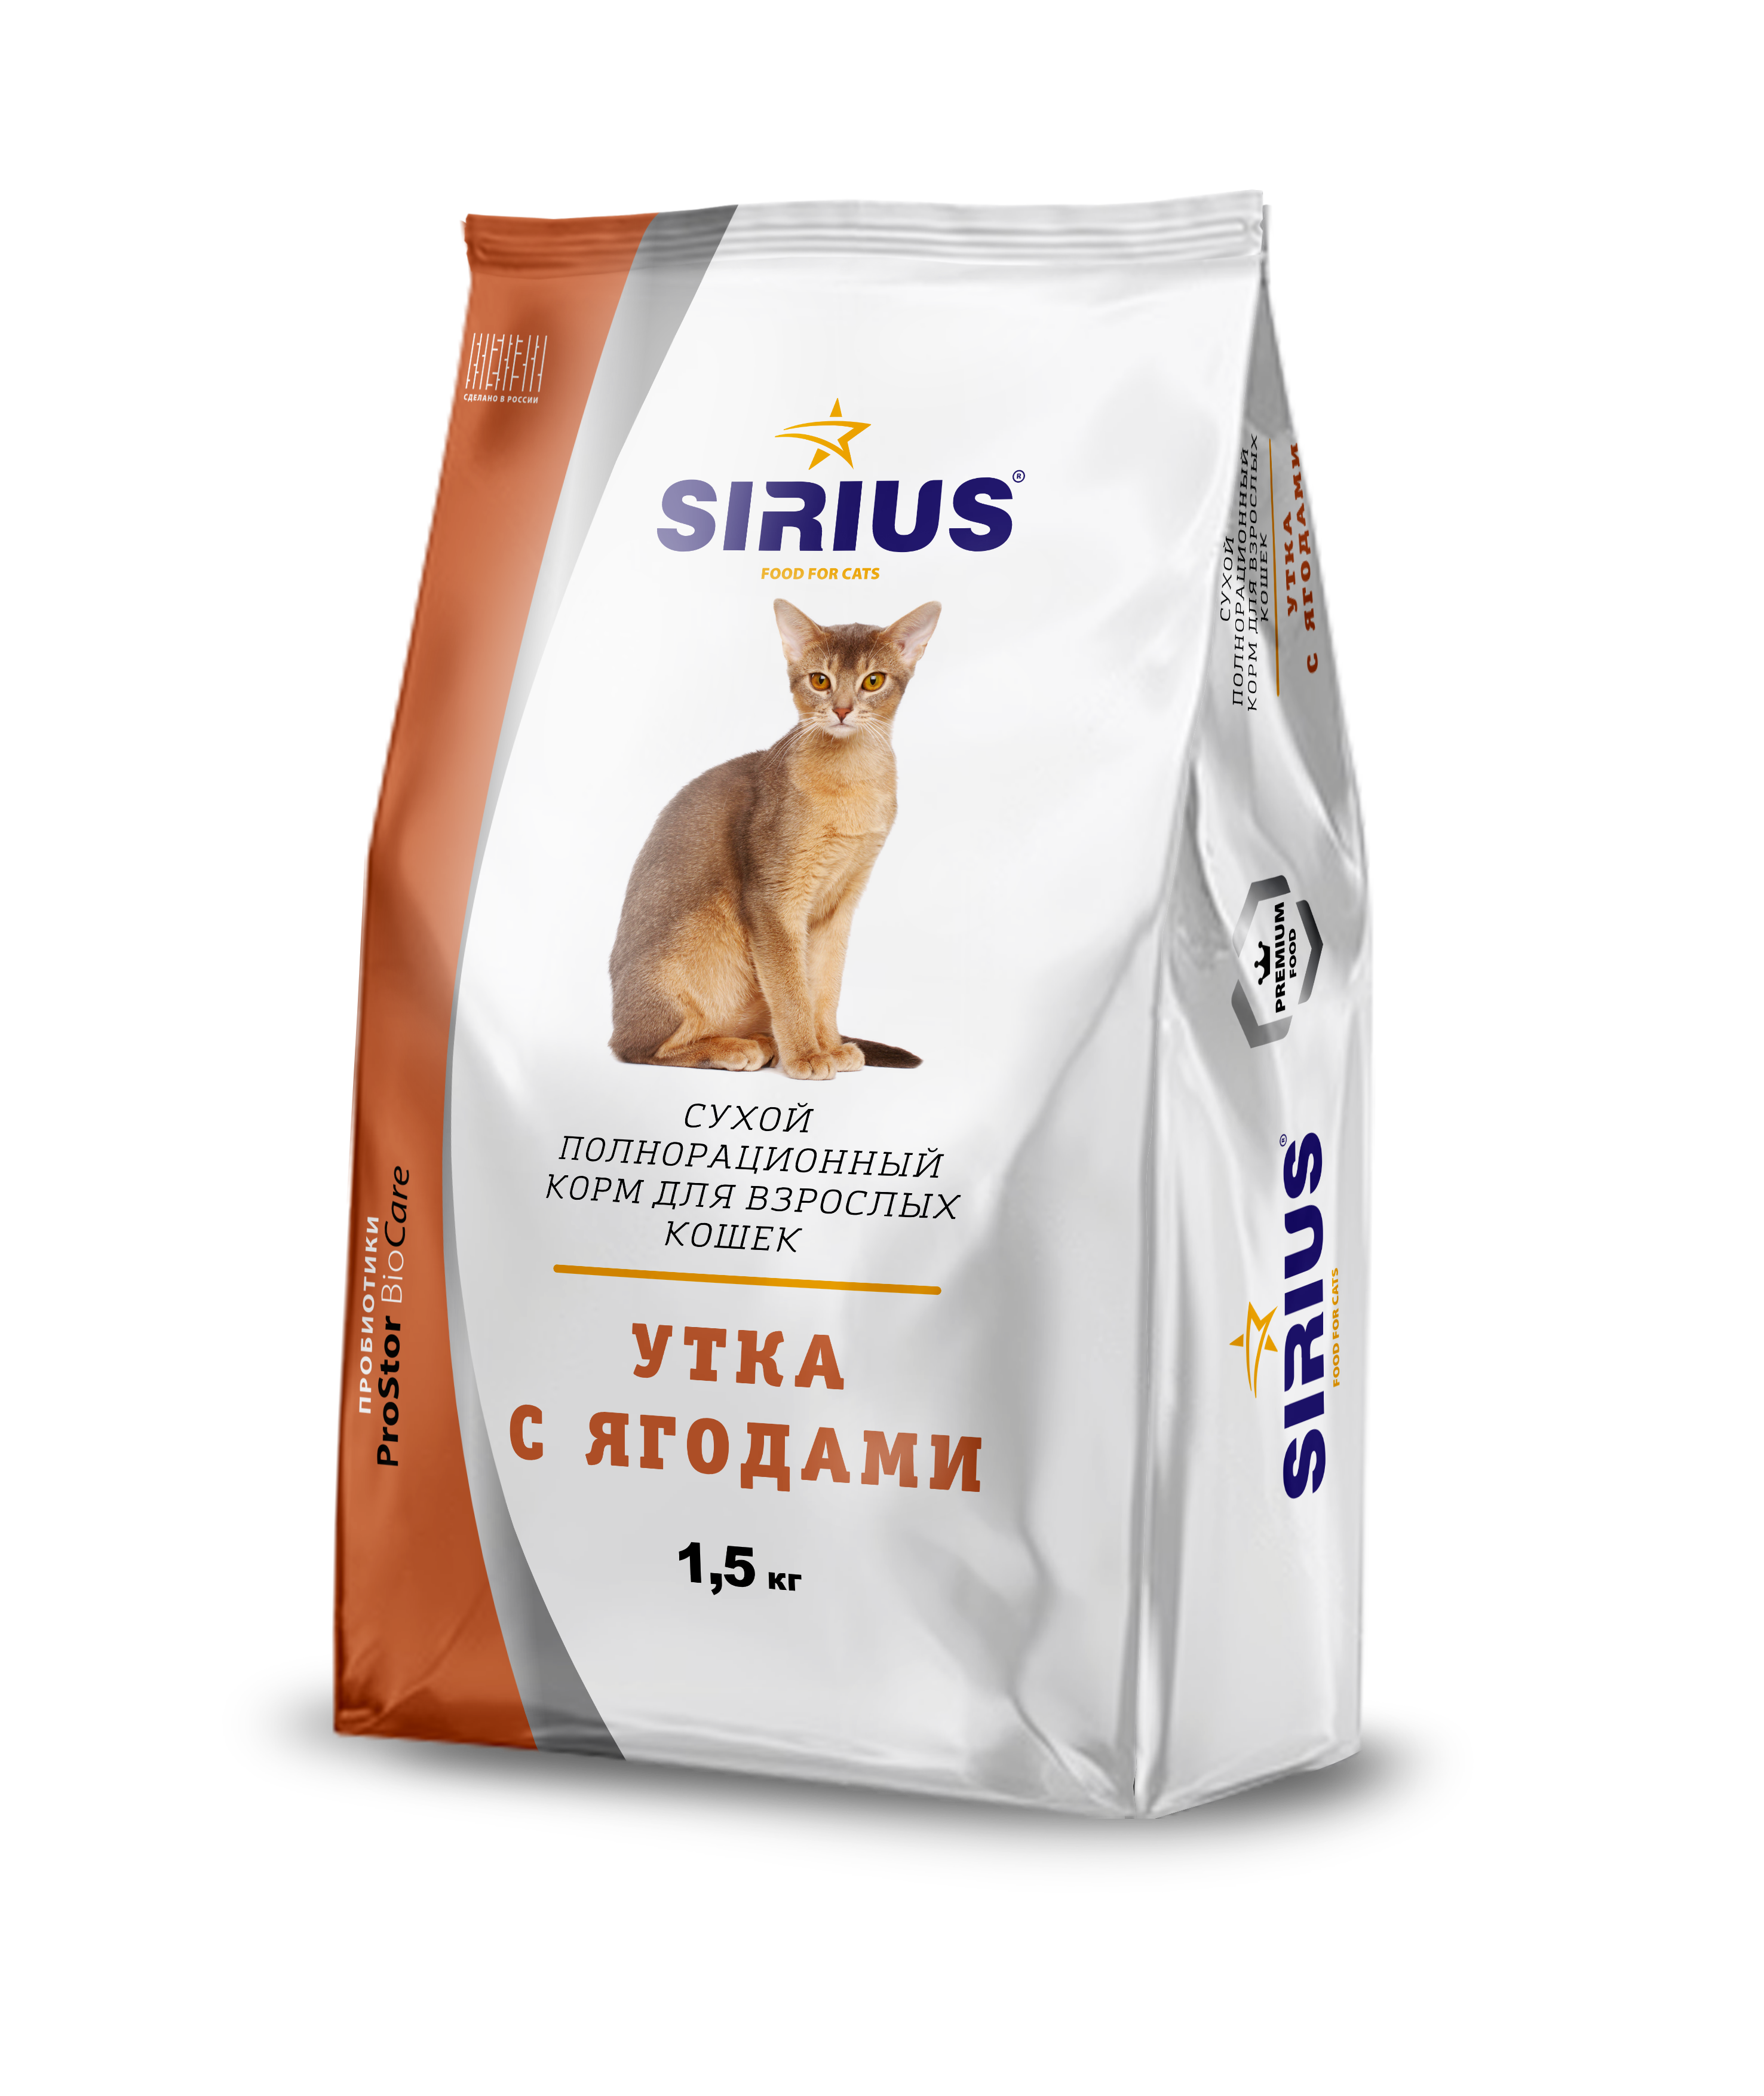 Сириус для кошек 10 кг купить. Сириус корм для кошек. Сухой полнорационный корм Сириус для кошек 10 кг. Корм для кошек Sirius мясной рацион для взрослых кошек 1.5 кг. Корм Сириус 1,5 кг для кошек.